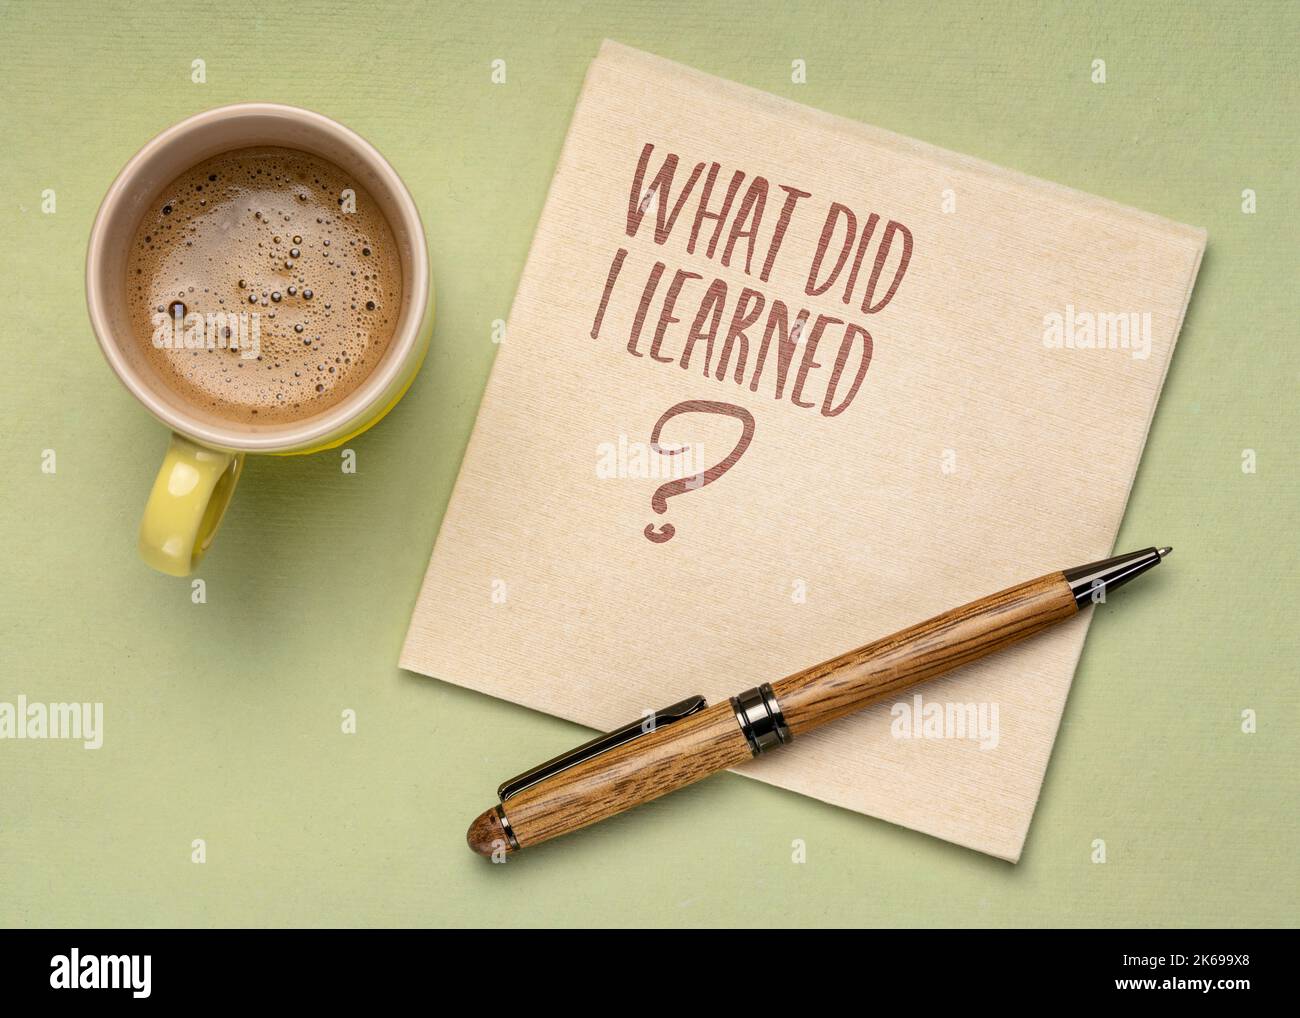 Was habe ich gelernt? Handschrift auf Serviette mit einer Tasse Kaffee. Lern-, Erfahrungs- und Bildungskonzept. Stockfoto